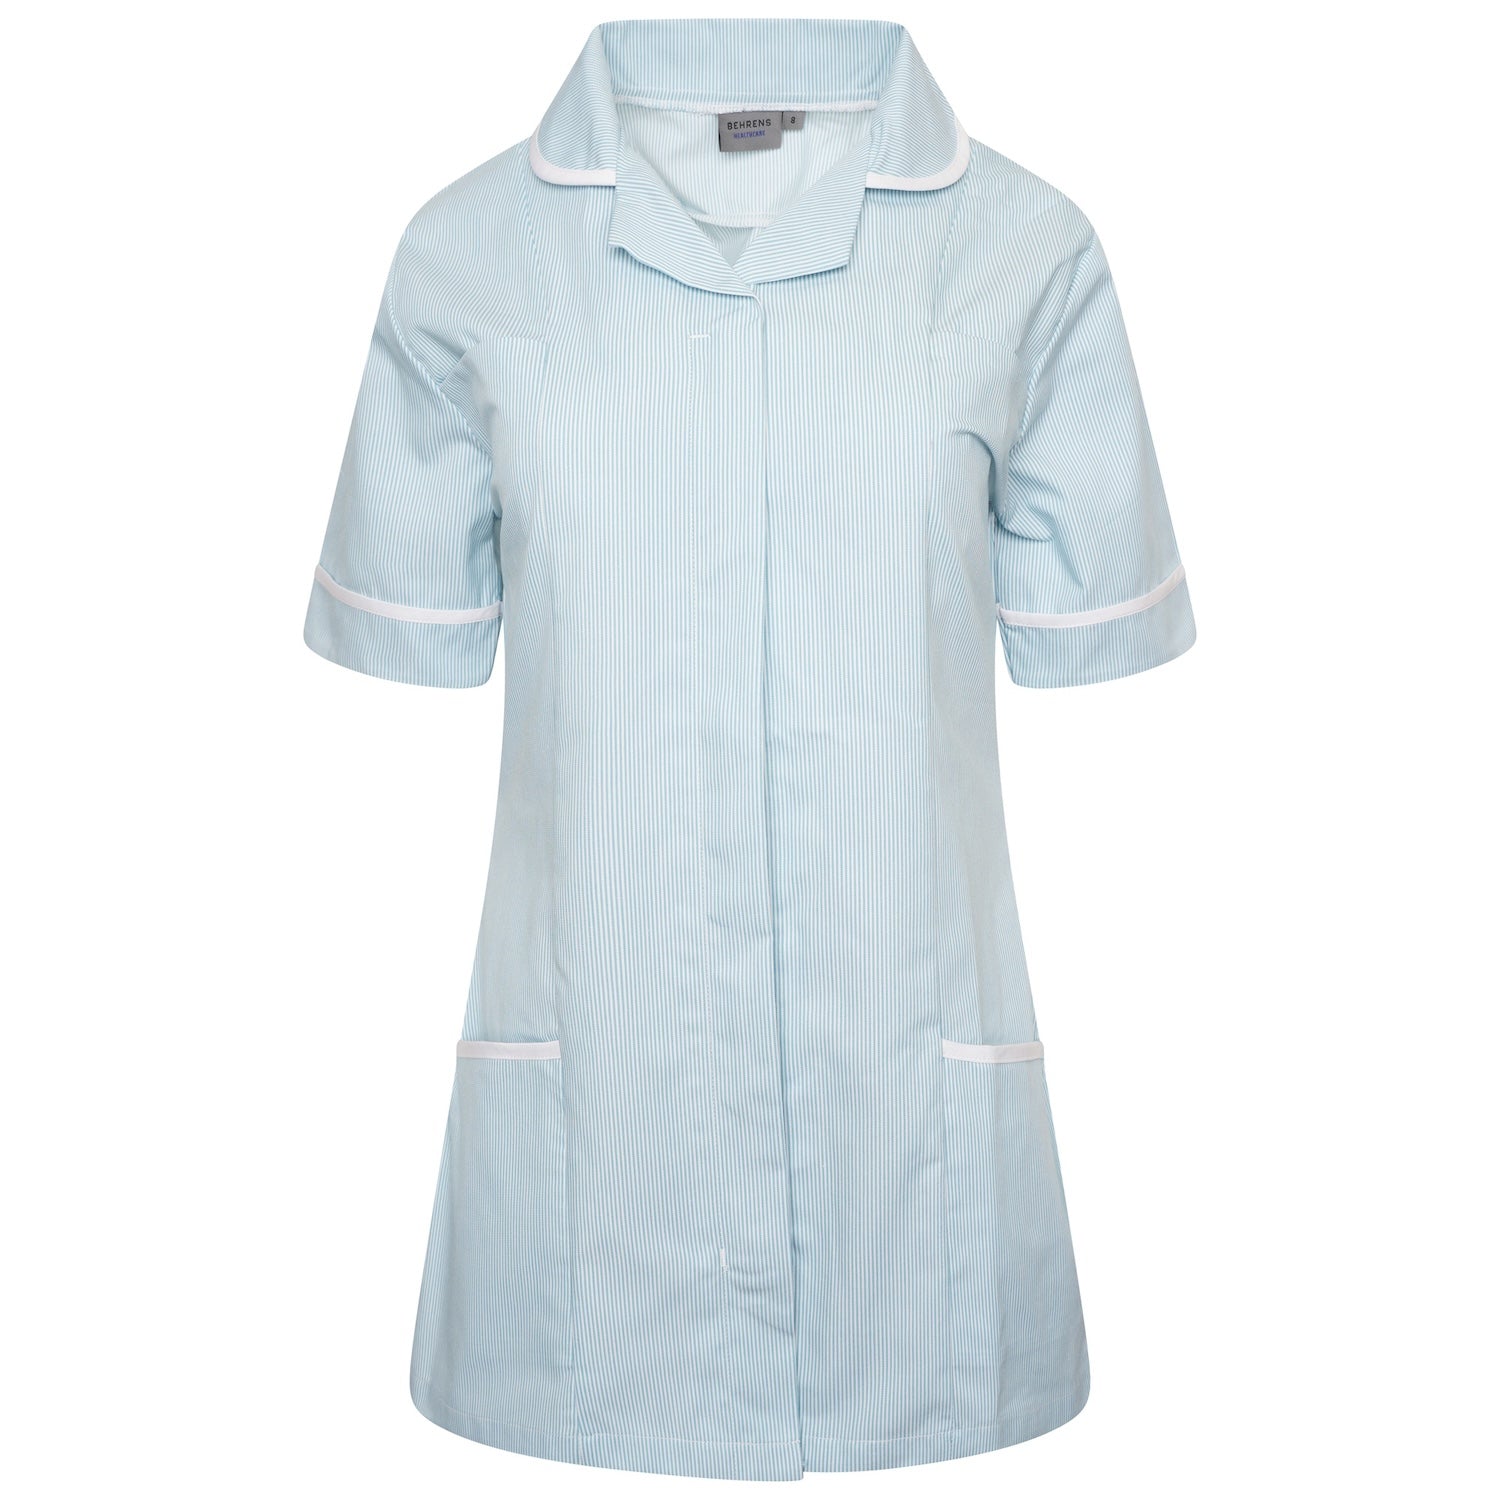 Ladies Healthcare Tunic | Round Collar | Green White Stripe/White Trim